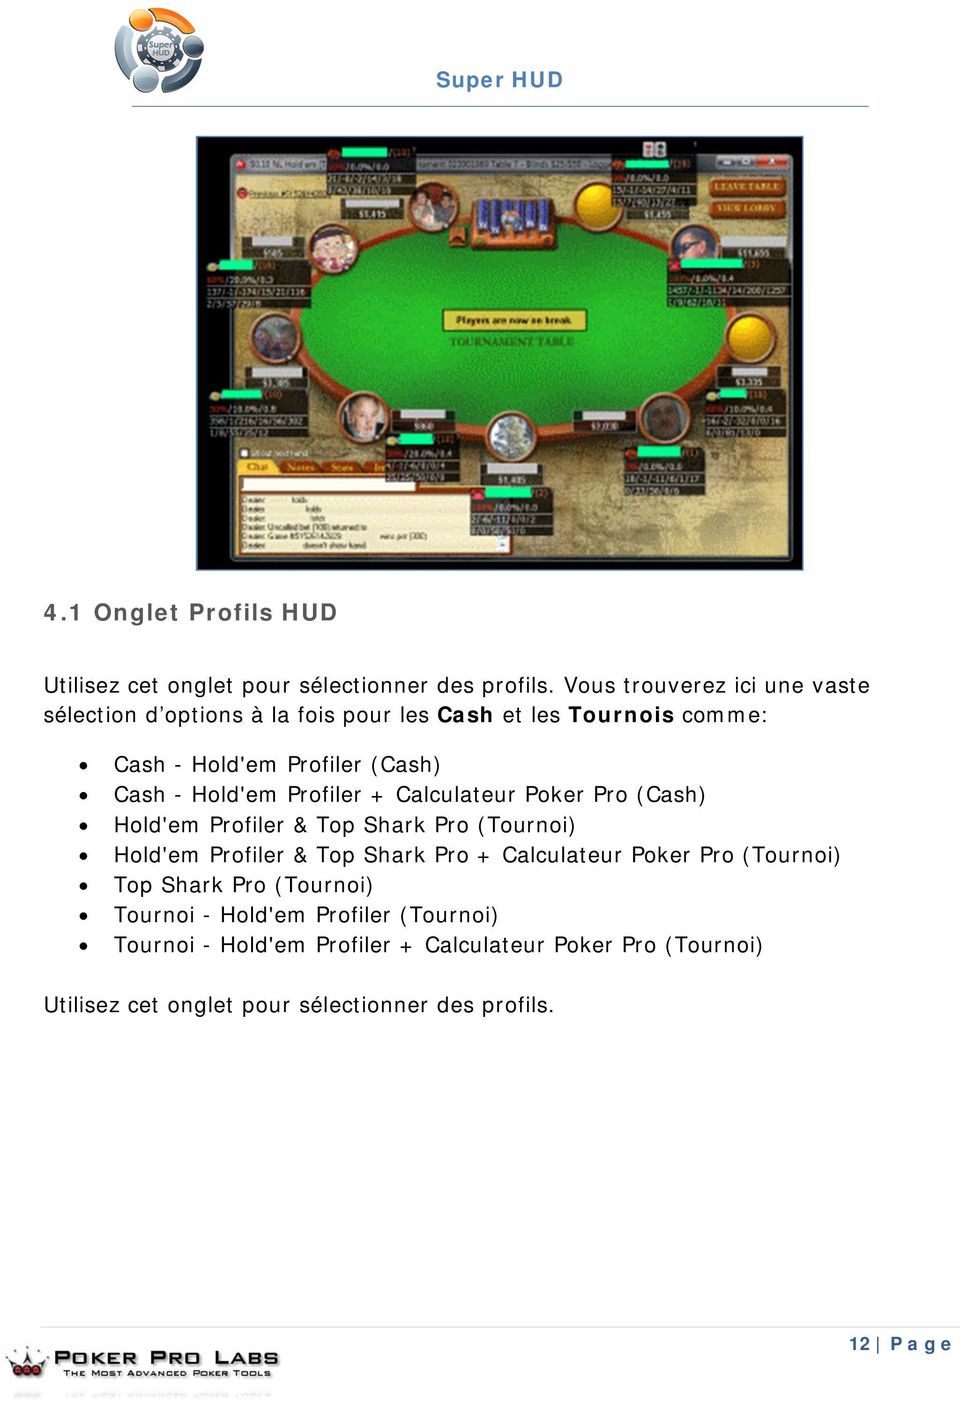 Hold'em Profiler + Calculateur Poker Pro (Cash) Hold'em Profiler & Top Shark Pro (Tournoi) Hold'em Profiler & Top Shark Pro + Calculateur